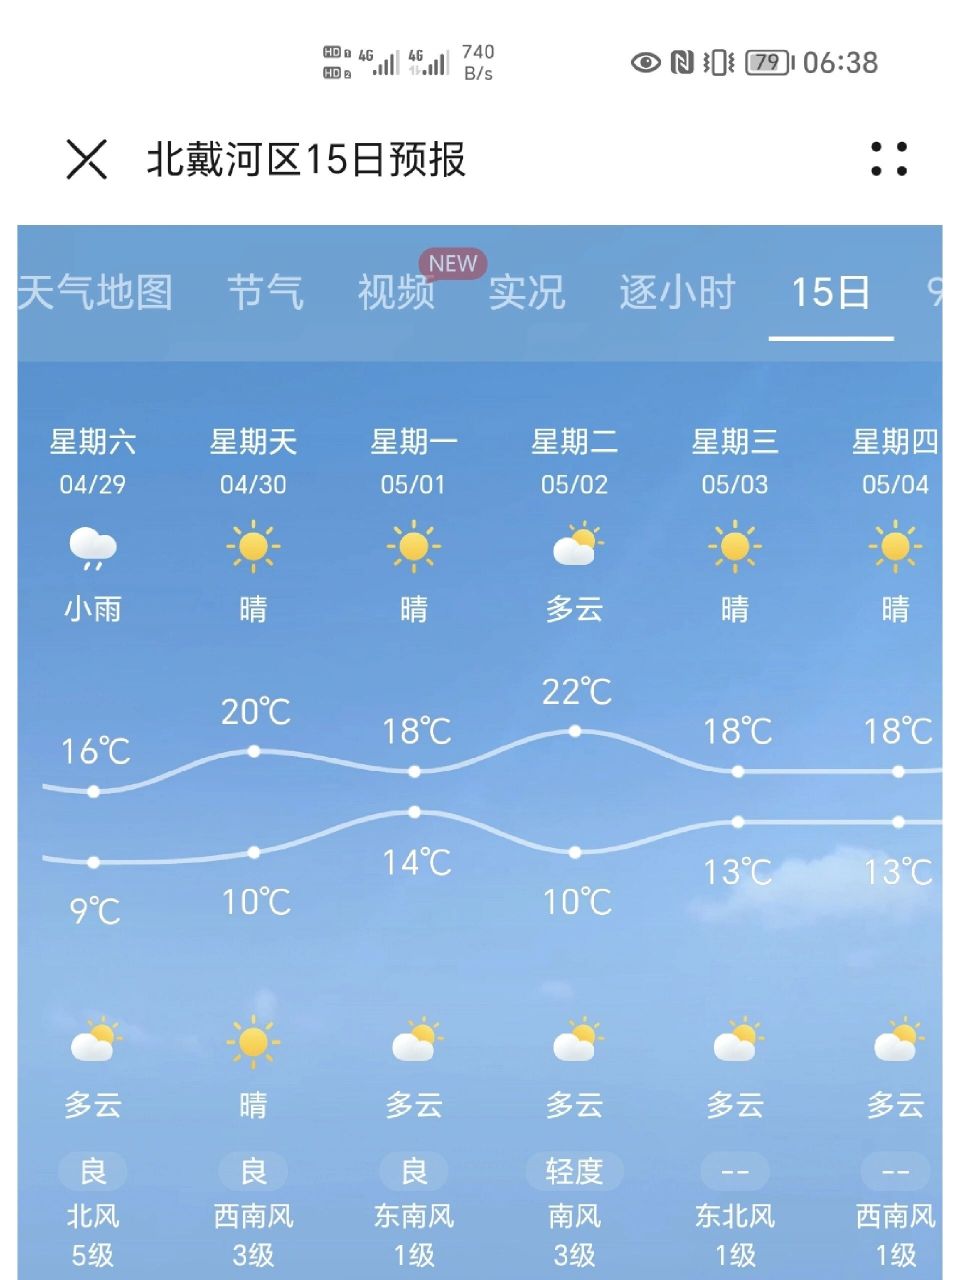 秦皇岛北戴河五一天气 假期临近,天气也慢慢转好希望可以更好!